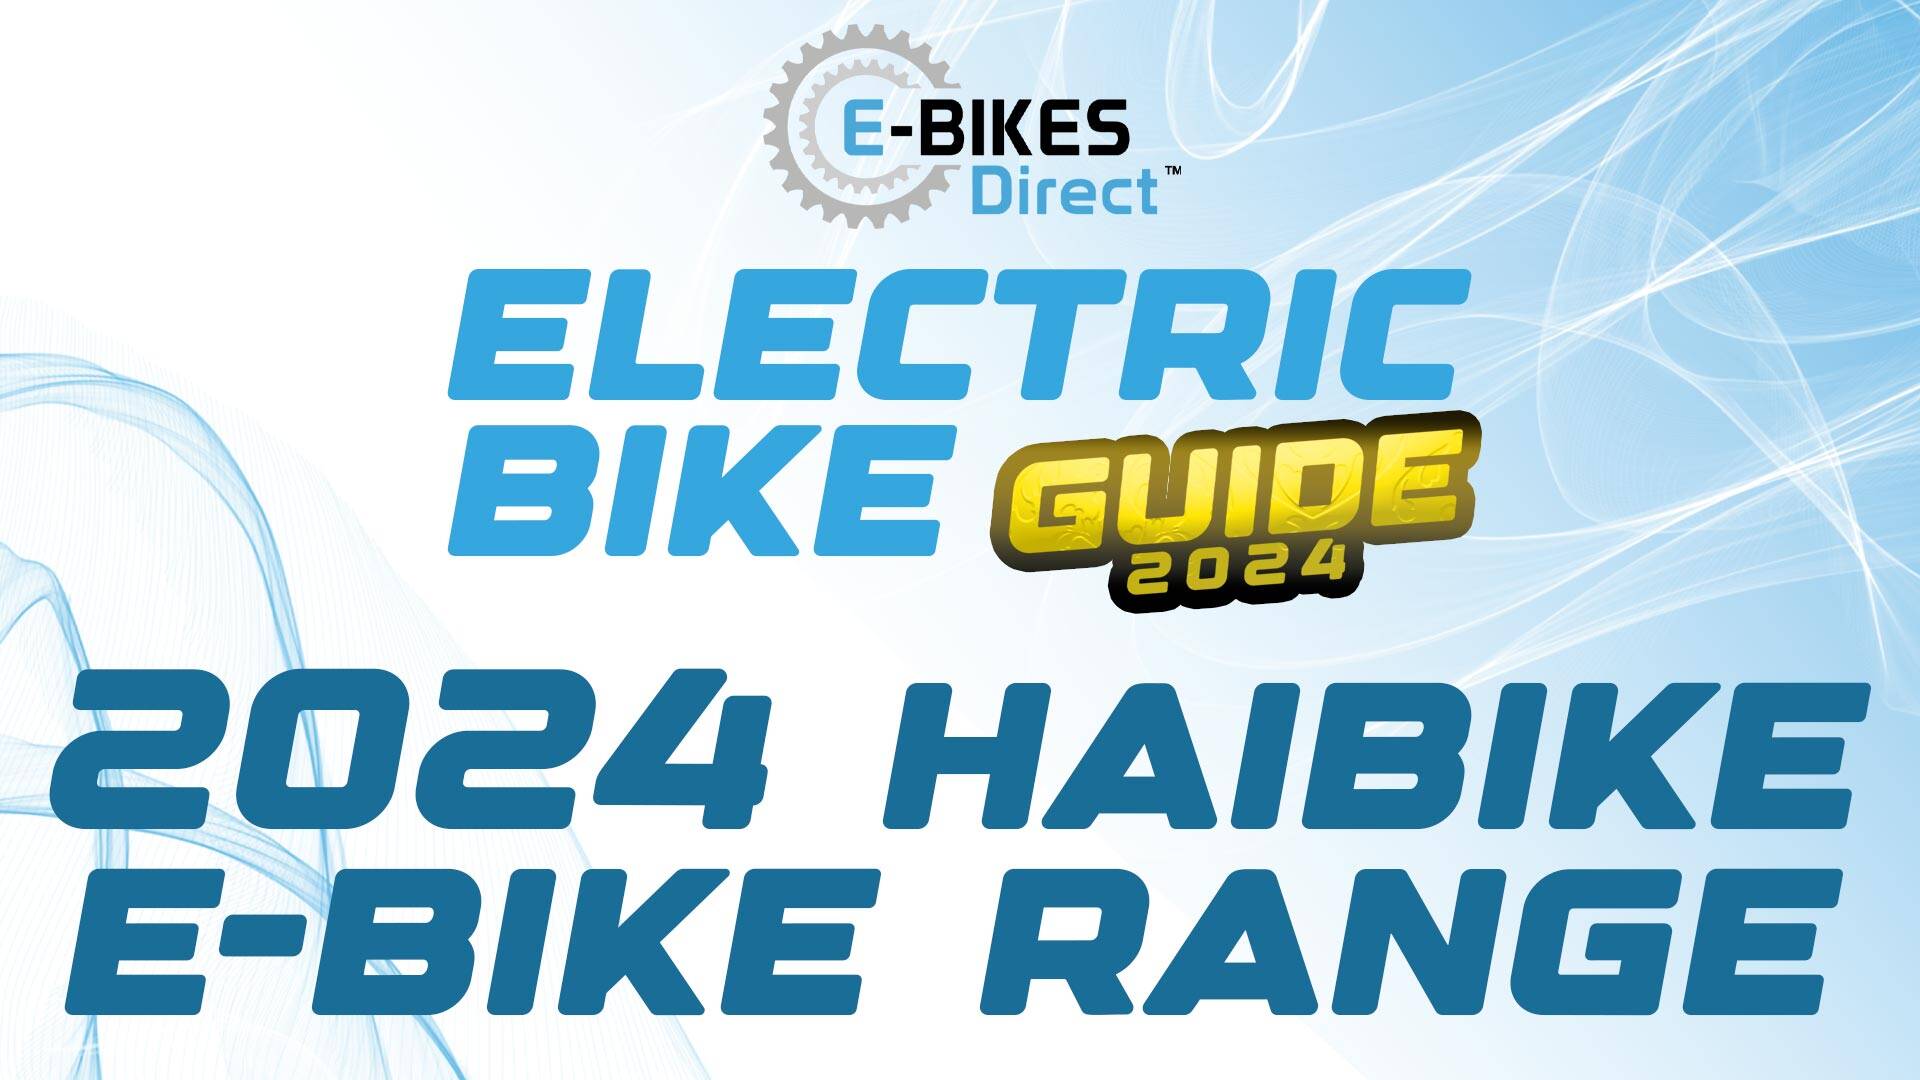 Electric Bike Guide - Haibike Electric Bike Range Explained - a blog by E-Bikes Direct